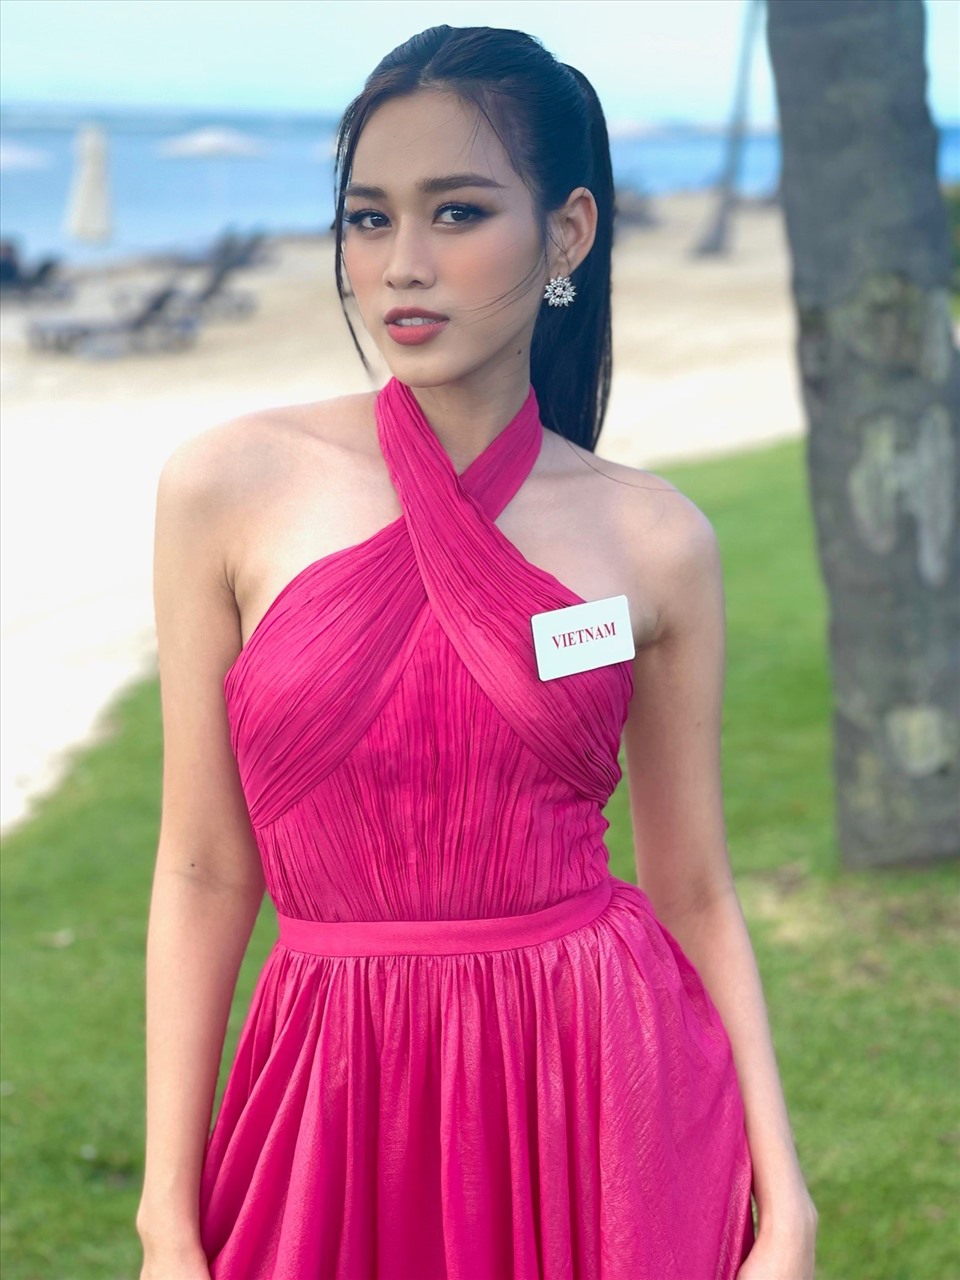 Đỗ Thị Hà đã chính thức lọt vào top 40 của Miss World 2021 nhờ thực lực khiến nhiều người không khỏi tự hào.